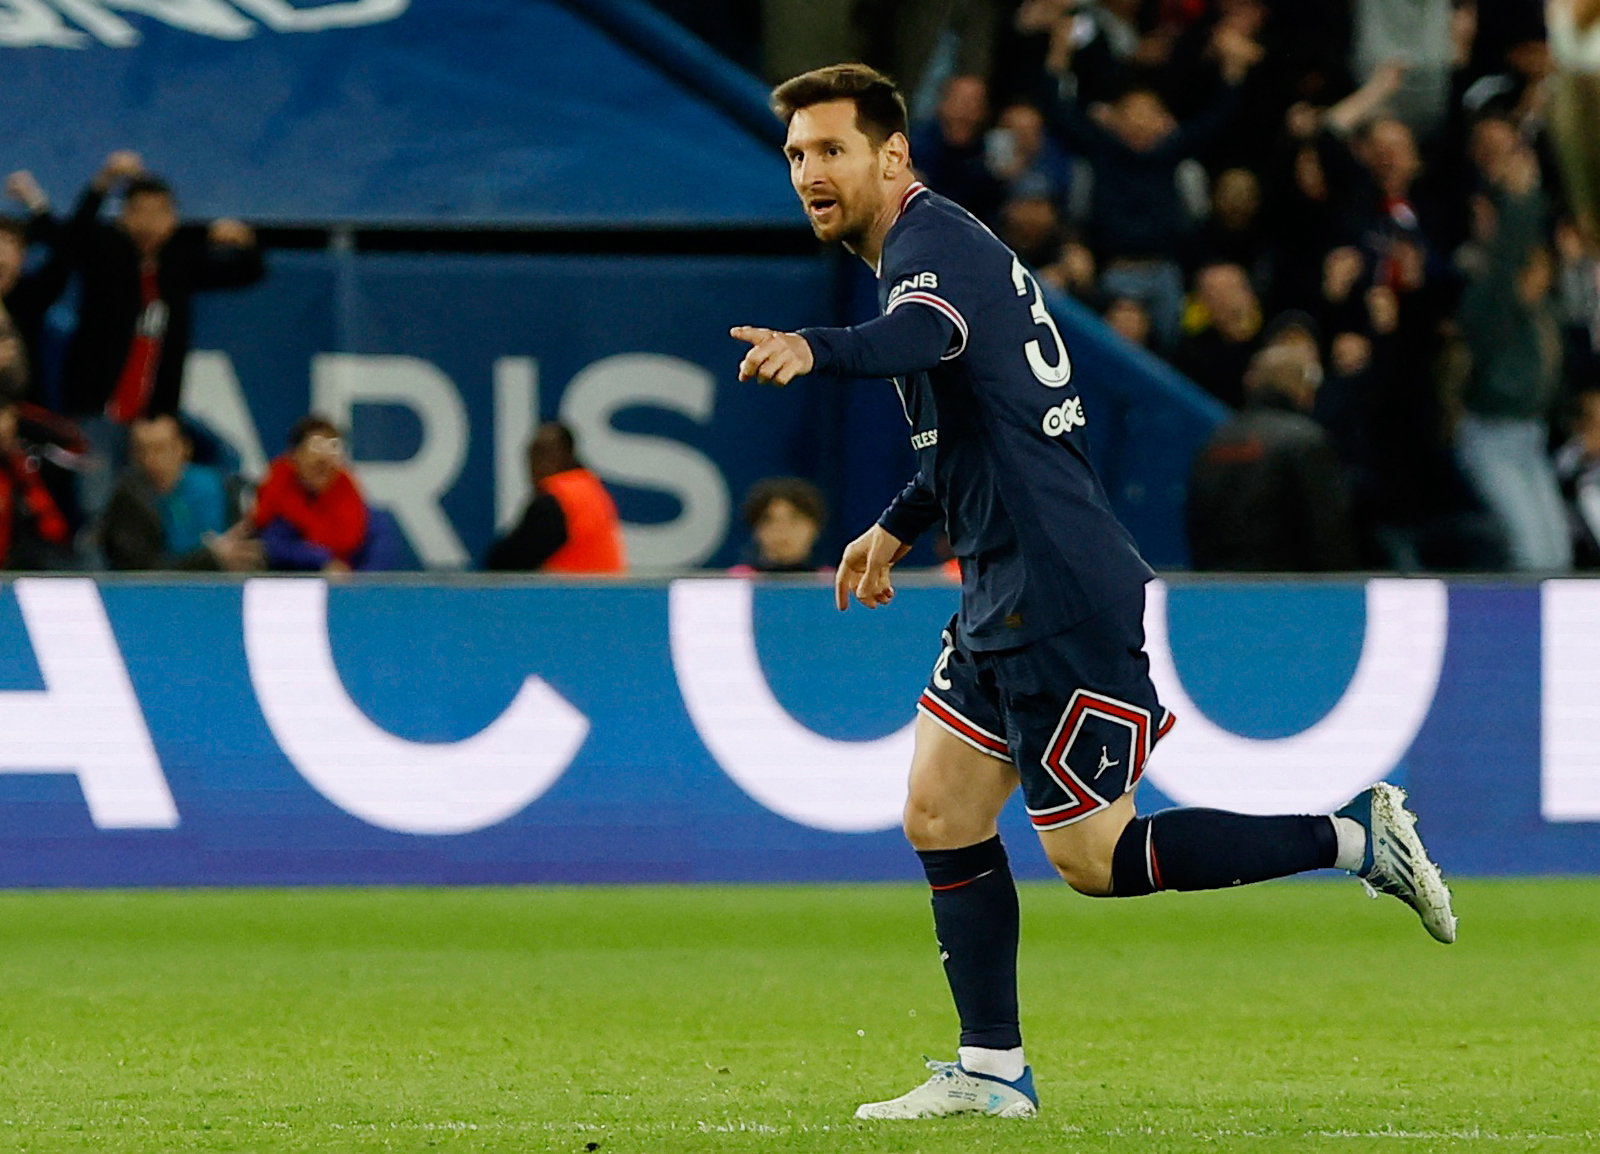 Người hâm mộ tranh luận về vị thế của ngôi sao PSG - Messi tại Ligue 1 sau những tiếng la hét trong trận hòa Lens